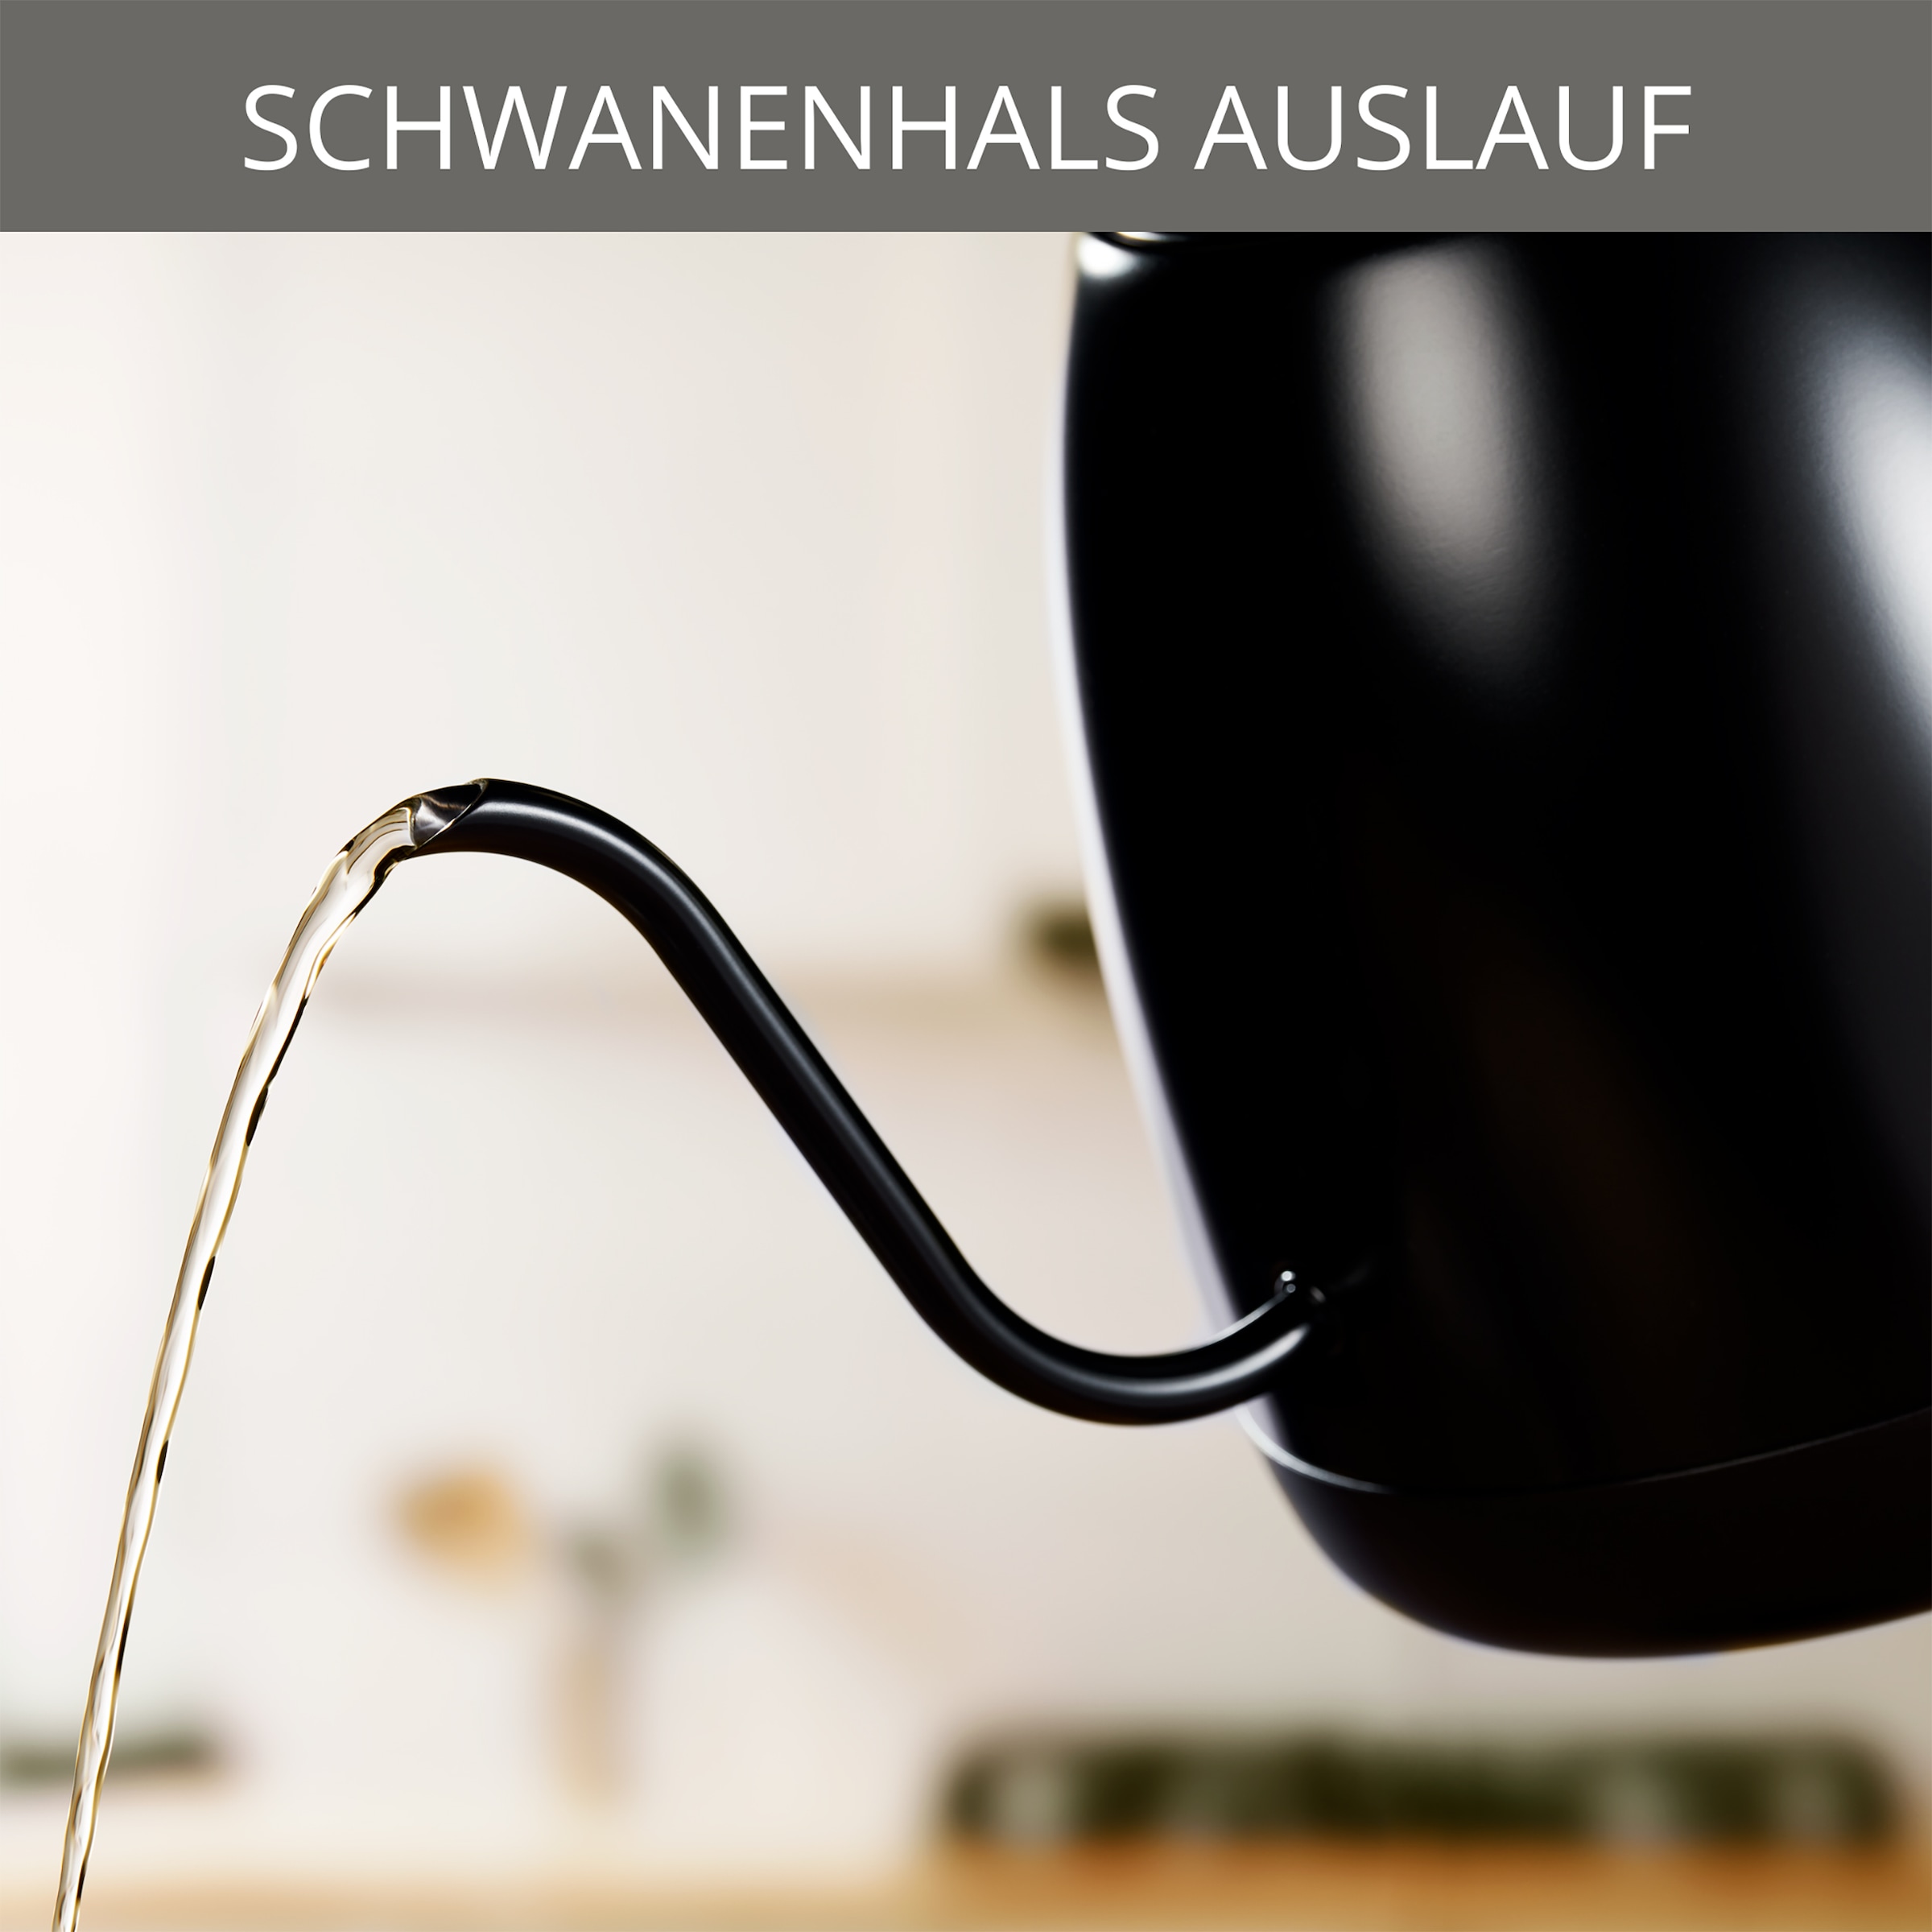 Krups Wasserkocher »BW9238 Café Control Gooseneck«, 1 l, 1200 W, Schwanenhals-Auslauf, 1 L, digitale Anzeige, 8 Einstellungen